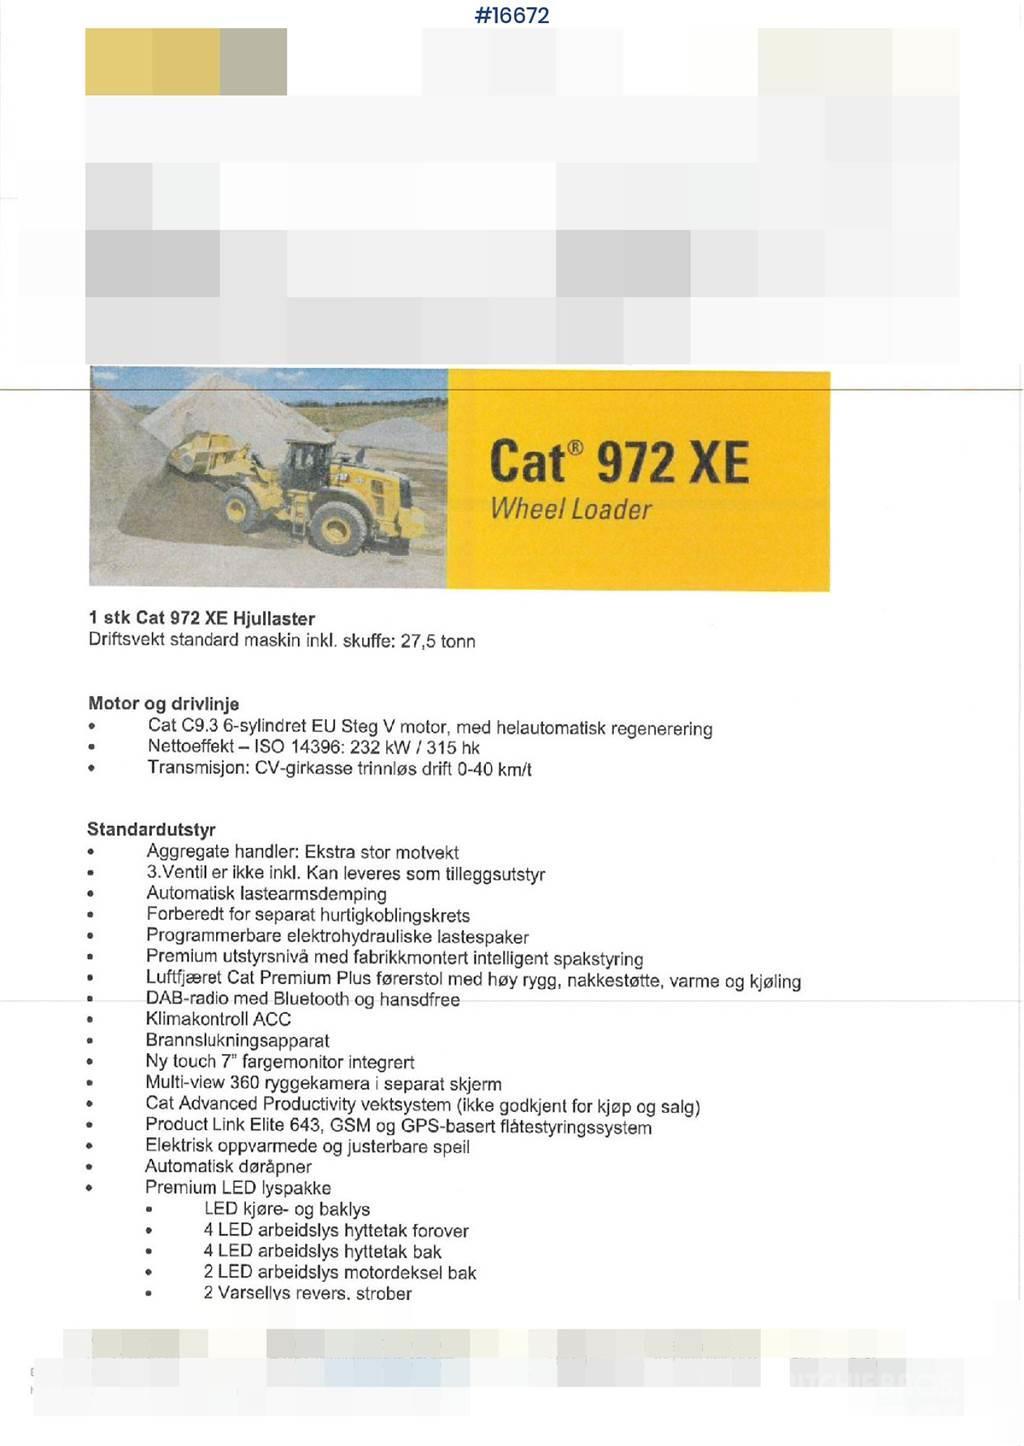 CAT 972 XE-GR. Brand new! Pás carregadoras de rodas